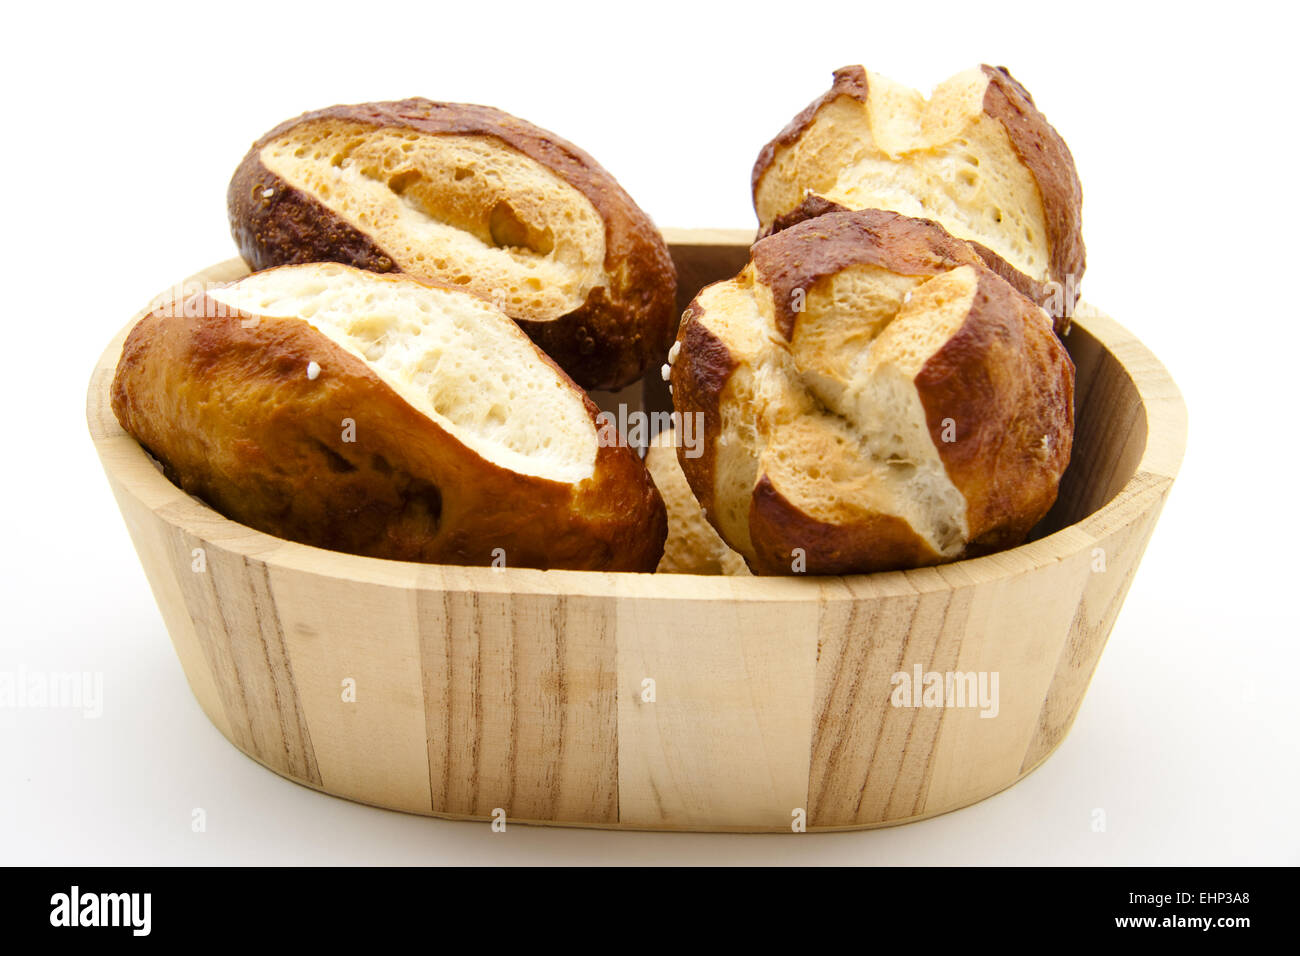 Lye bread rolls in bread box Stock Photo